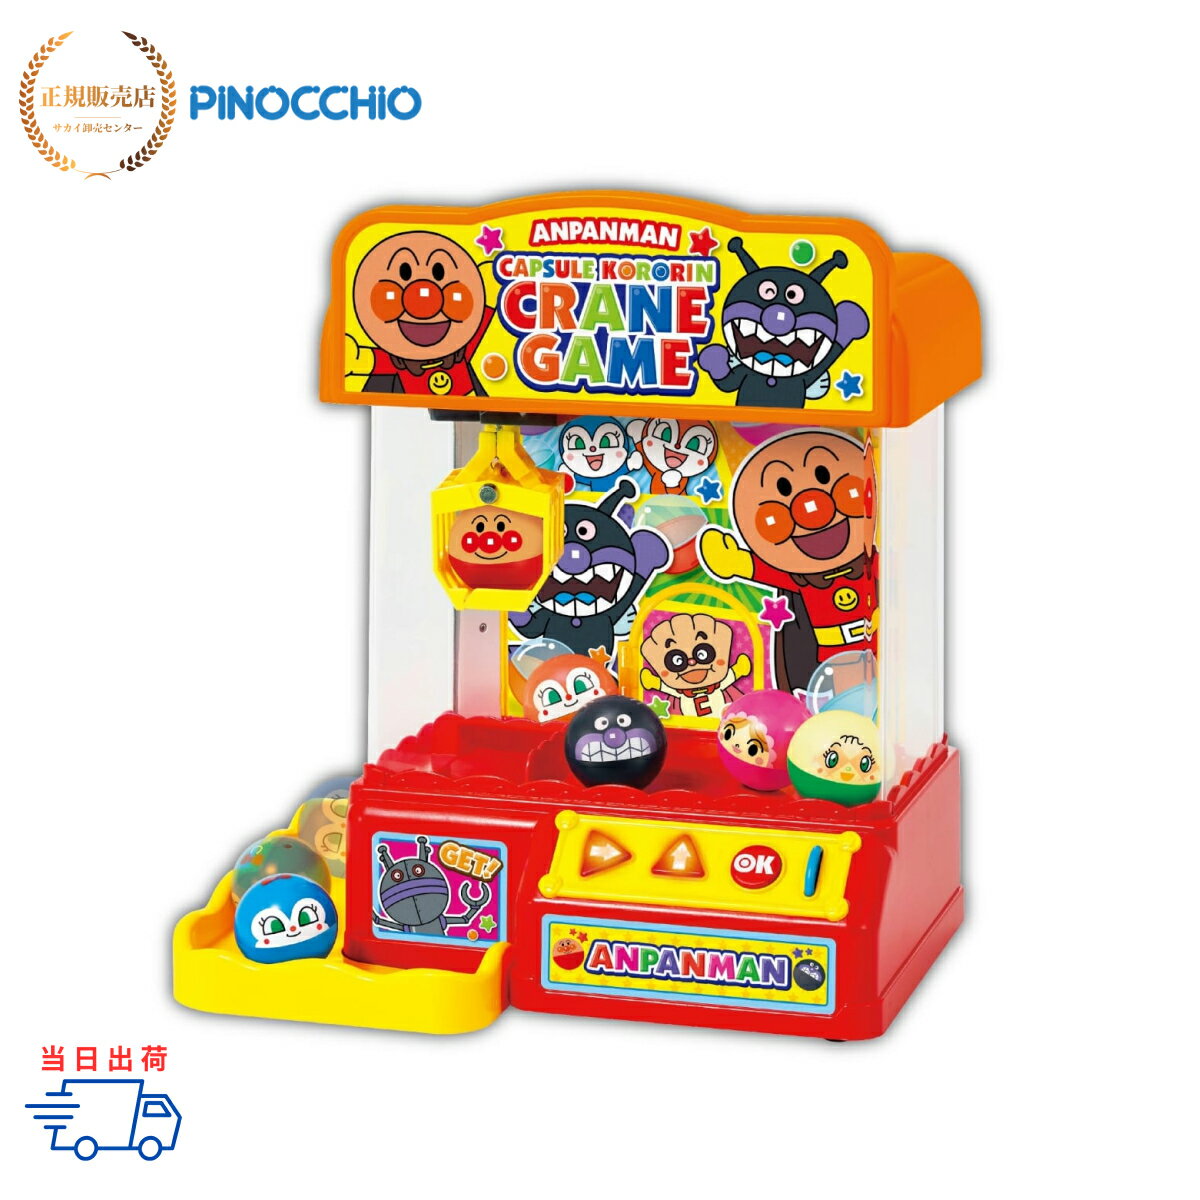 【正規販売店】アンパンマンカプセルころりん クレーンゲーム PINOCCHIO ピノチオ